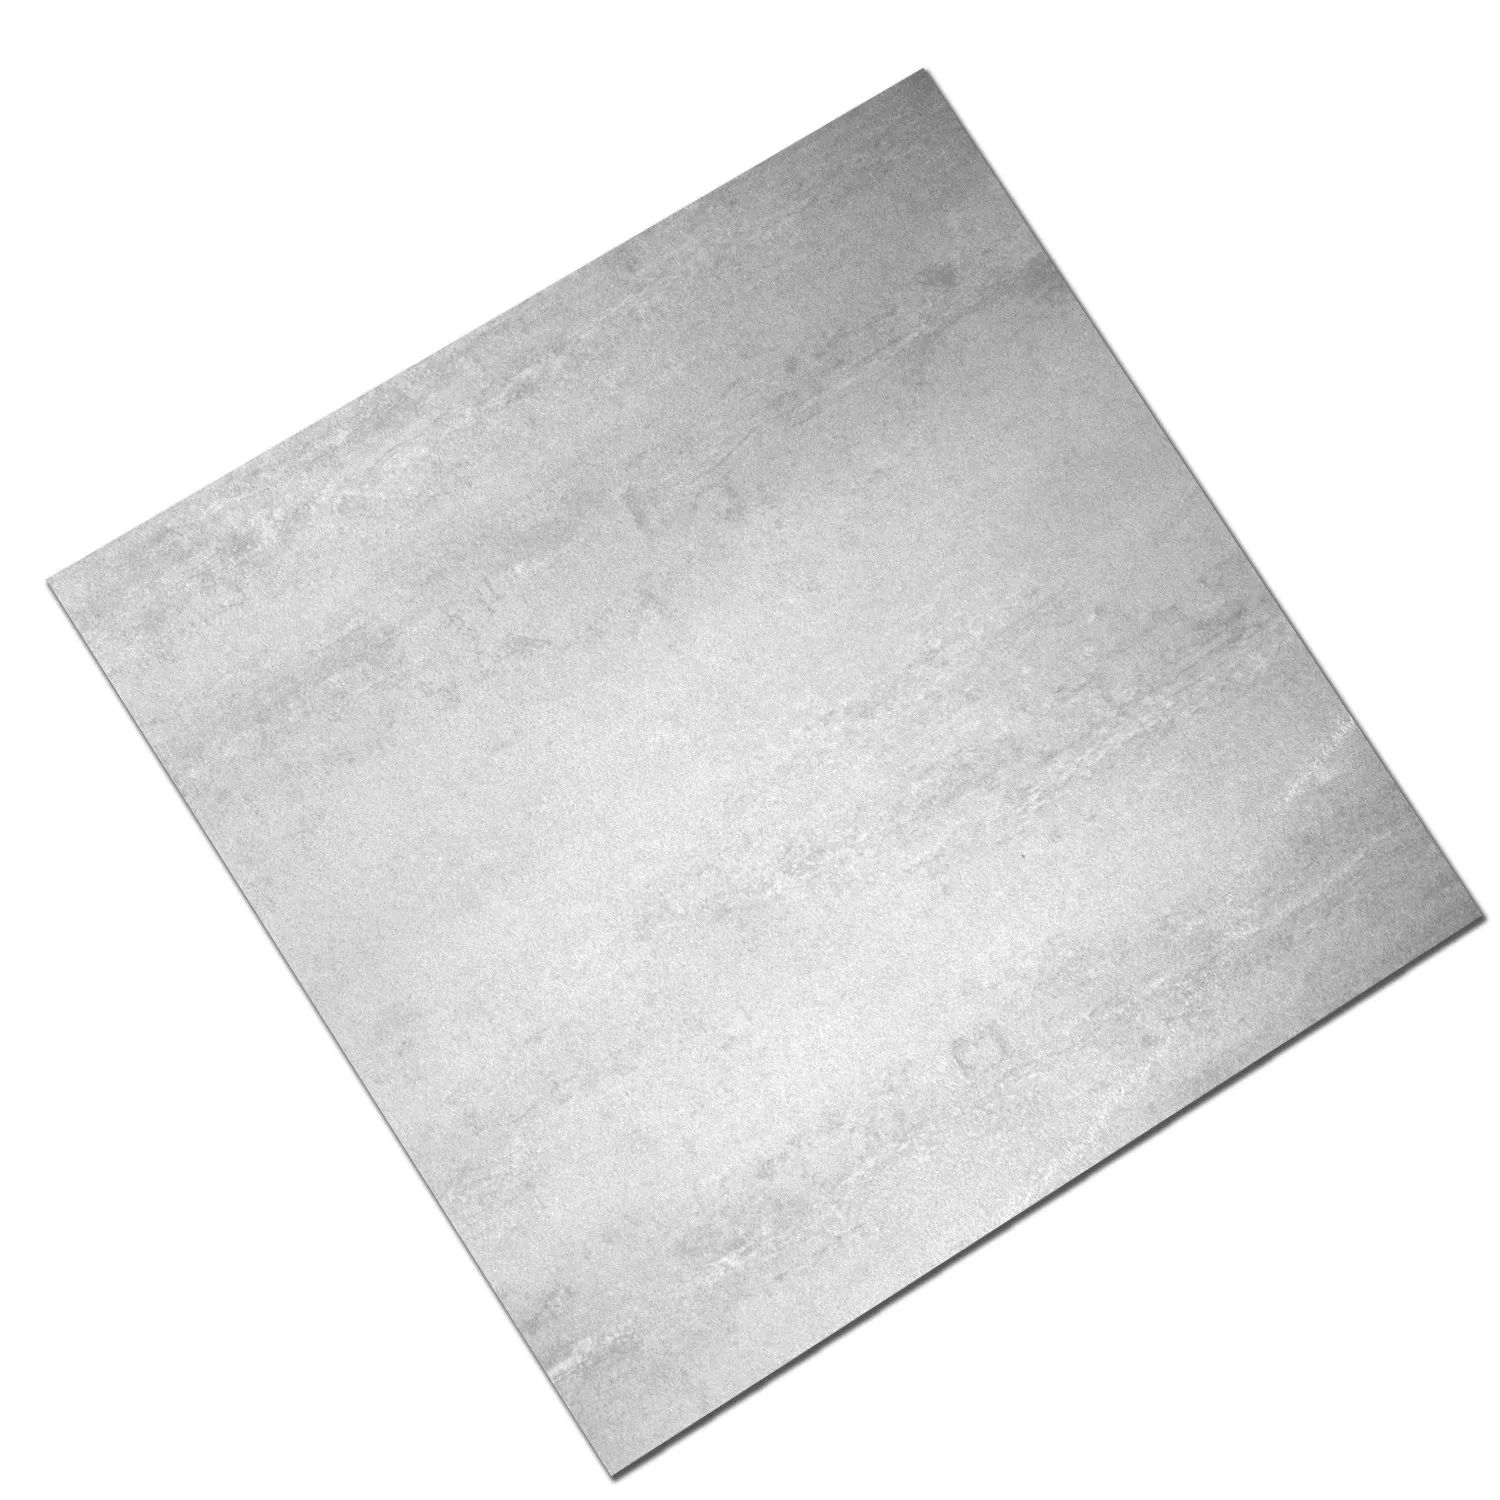 Sample Floor Tiles Madeira White Semi Polished 60x60cm